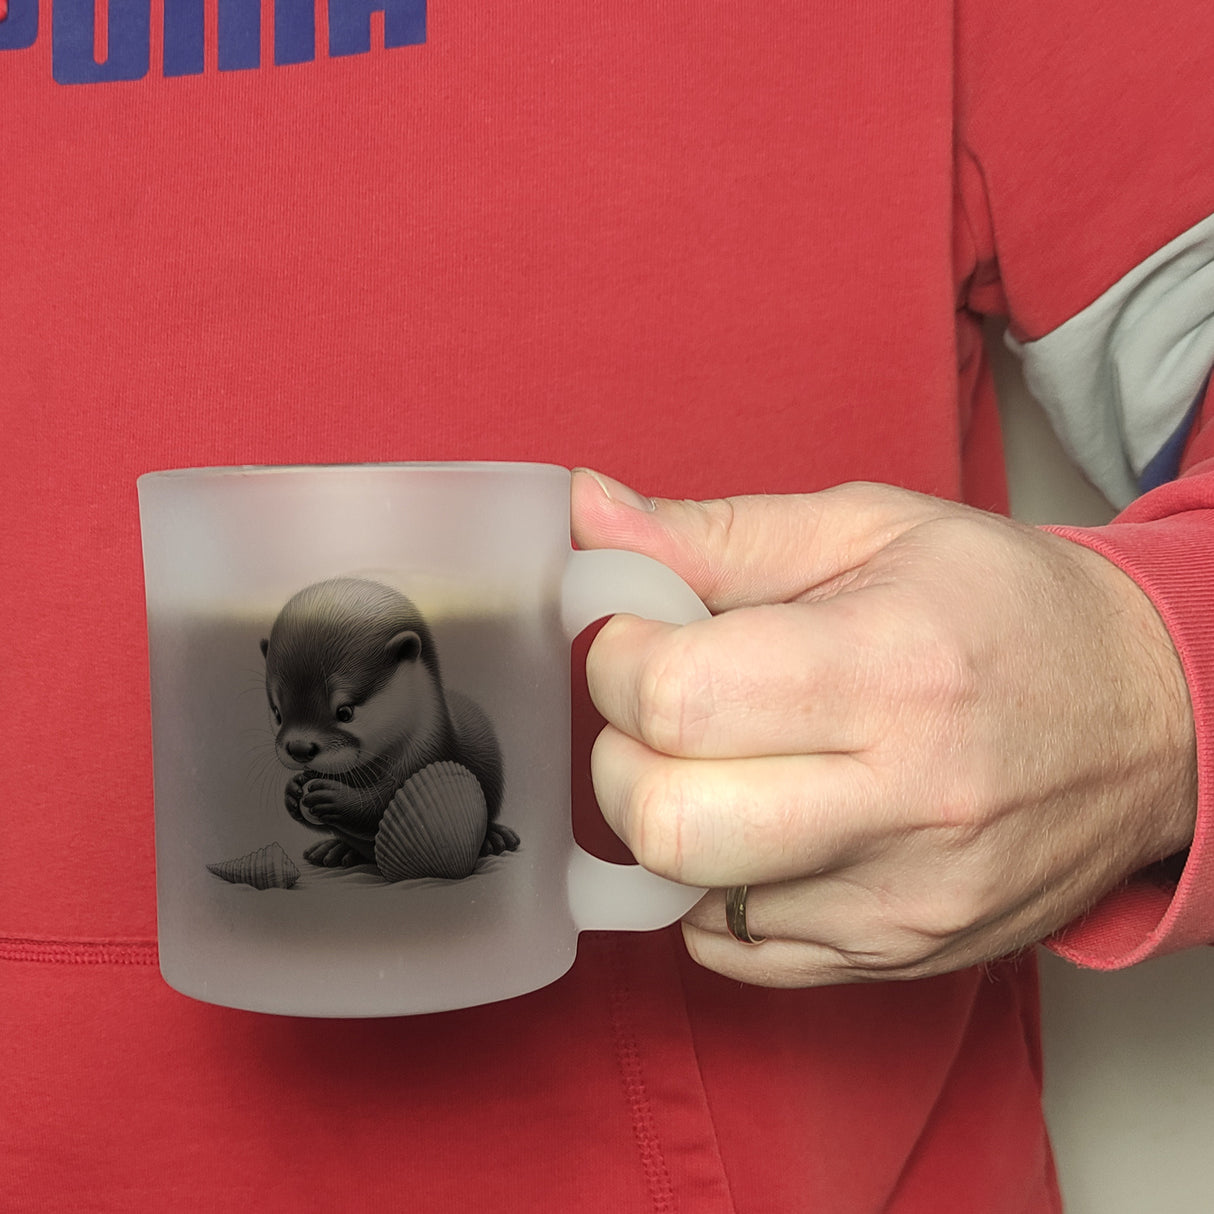 Baby Otter mit Muschel Kaffeebecher